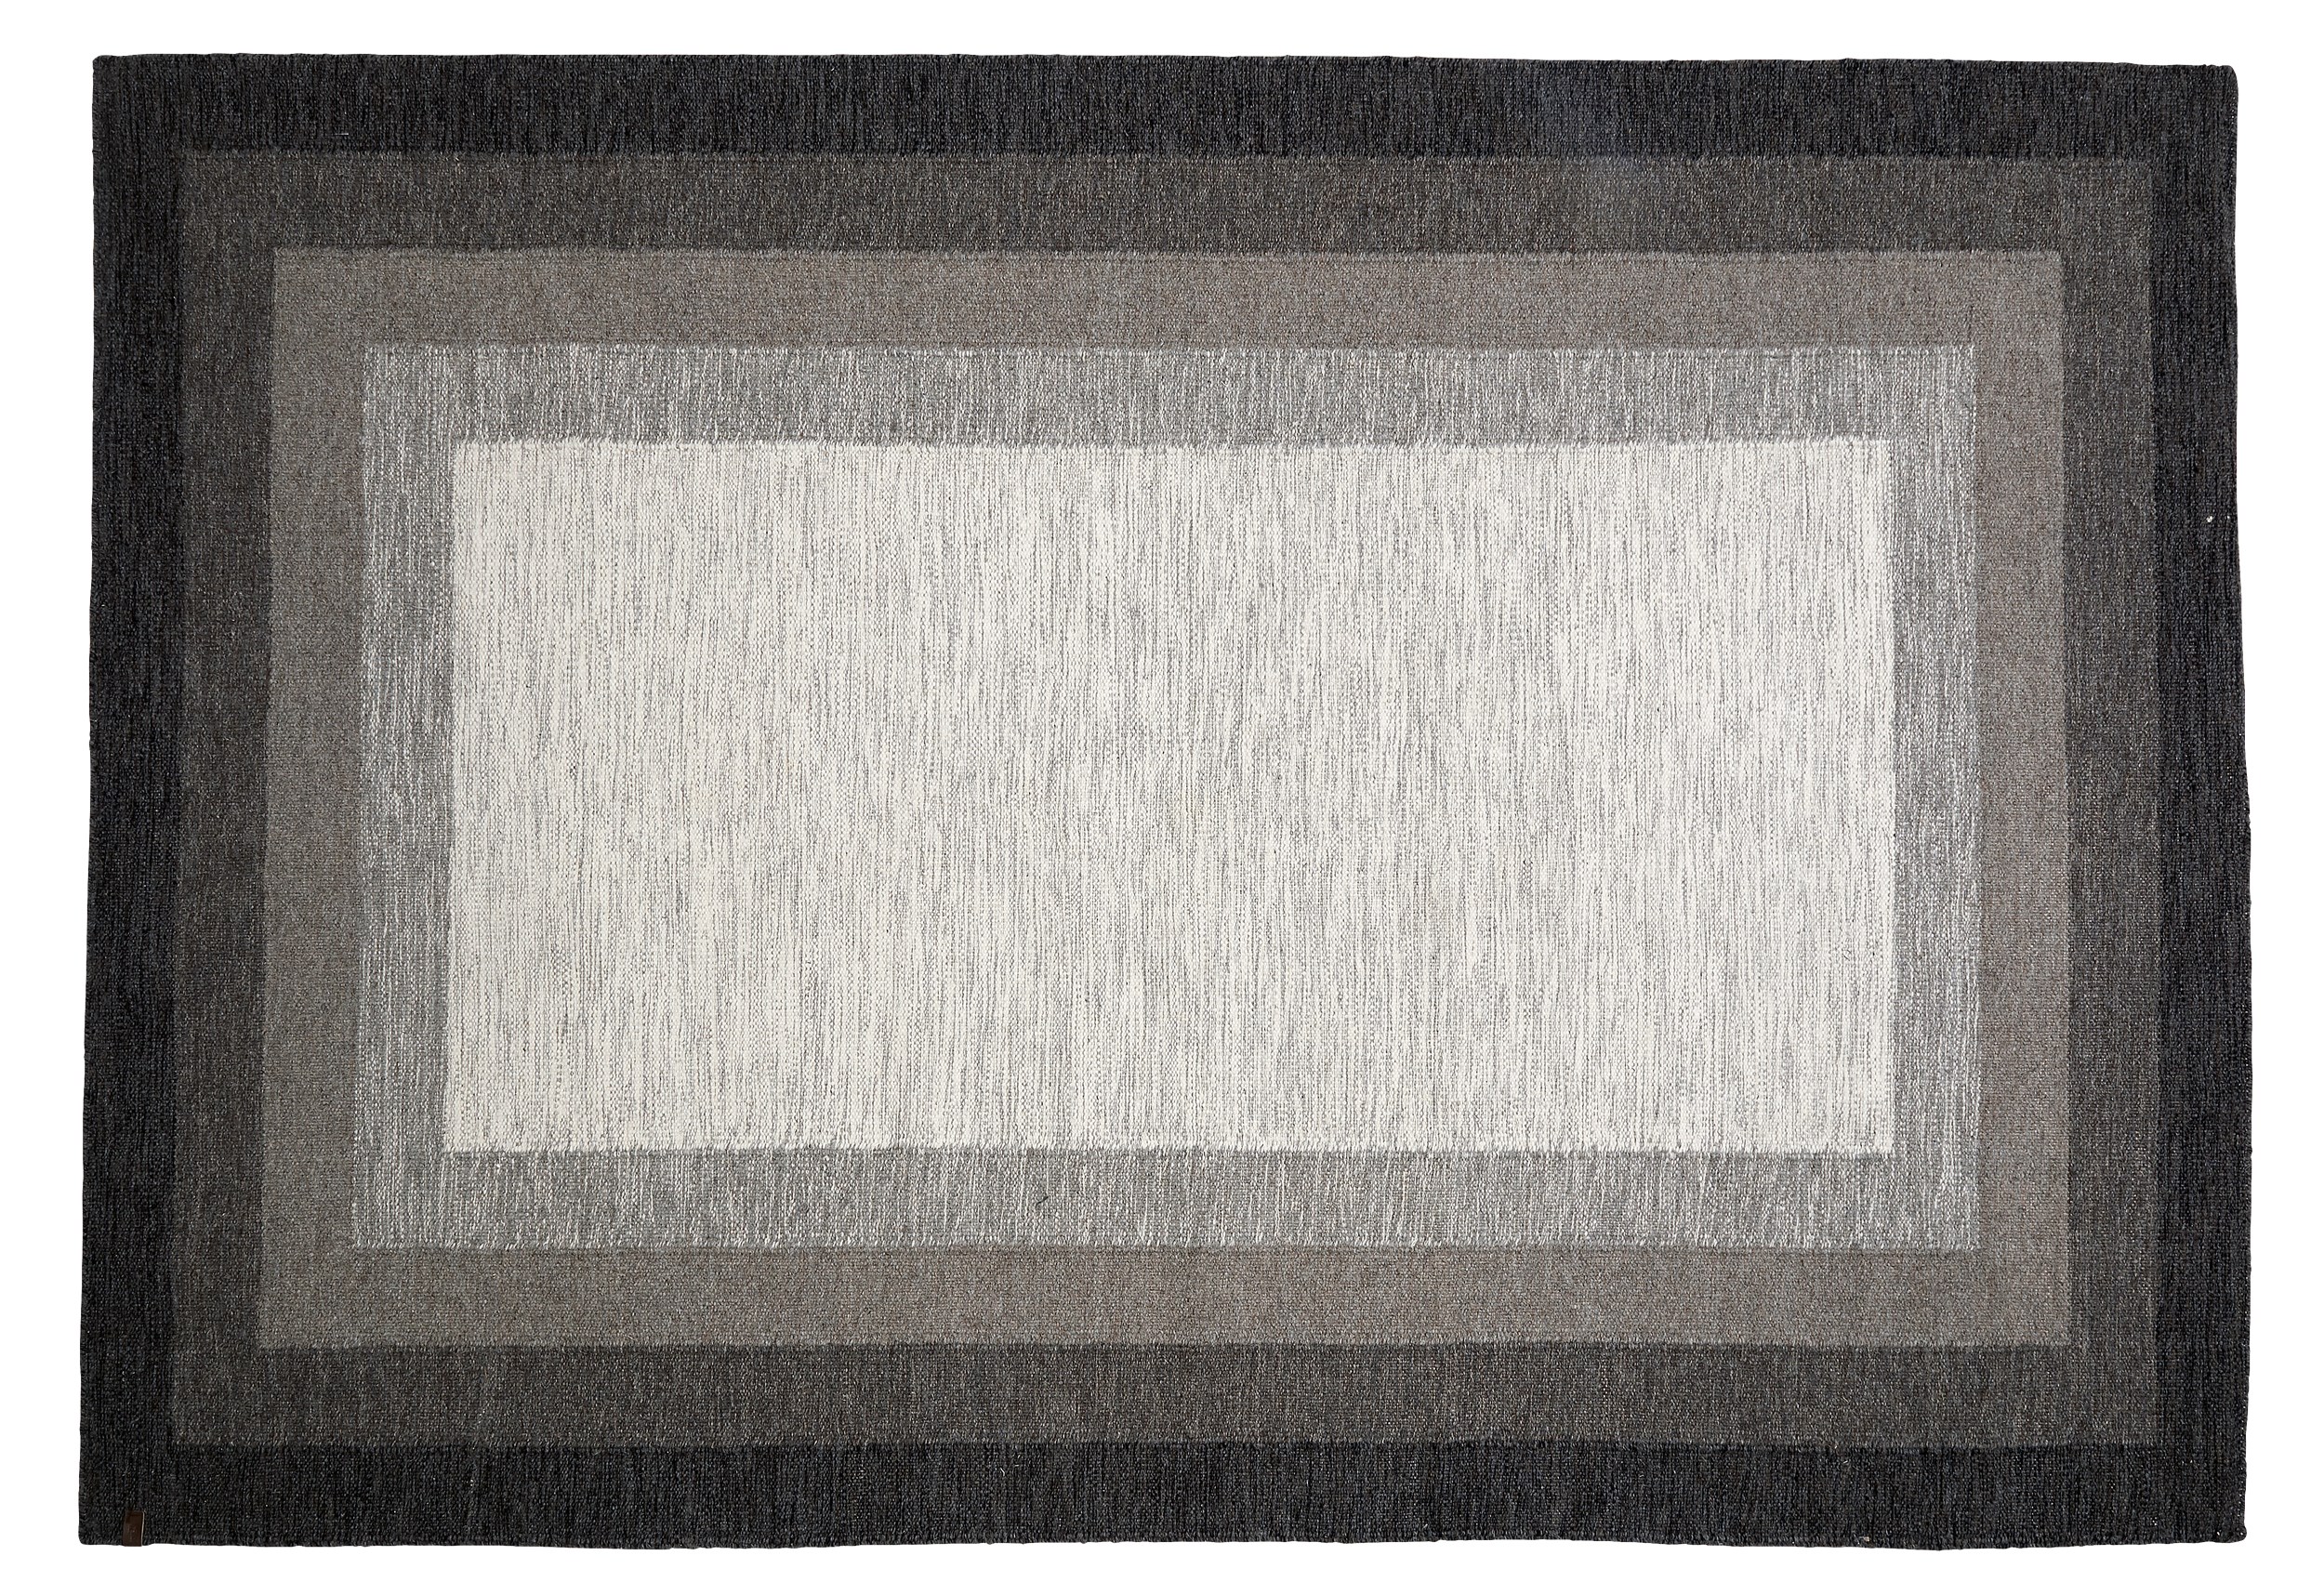 Åland Kelimmatta 170 x 240 cm - Brun/beige ull och kvadratiskt mönster